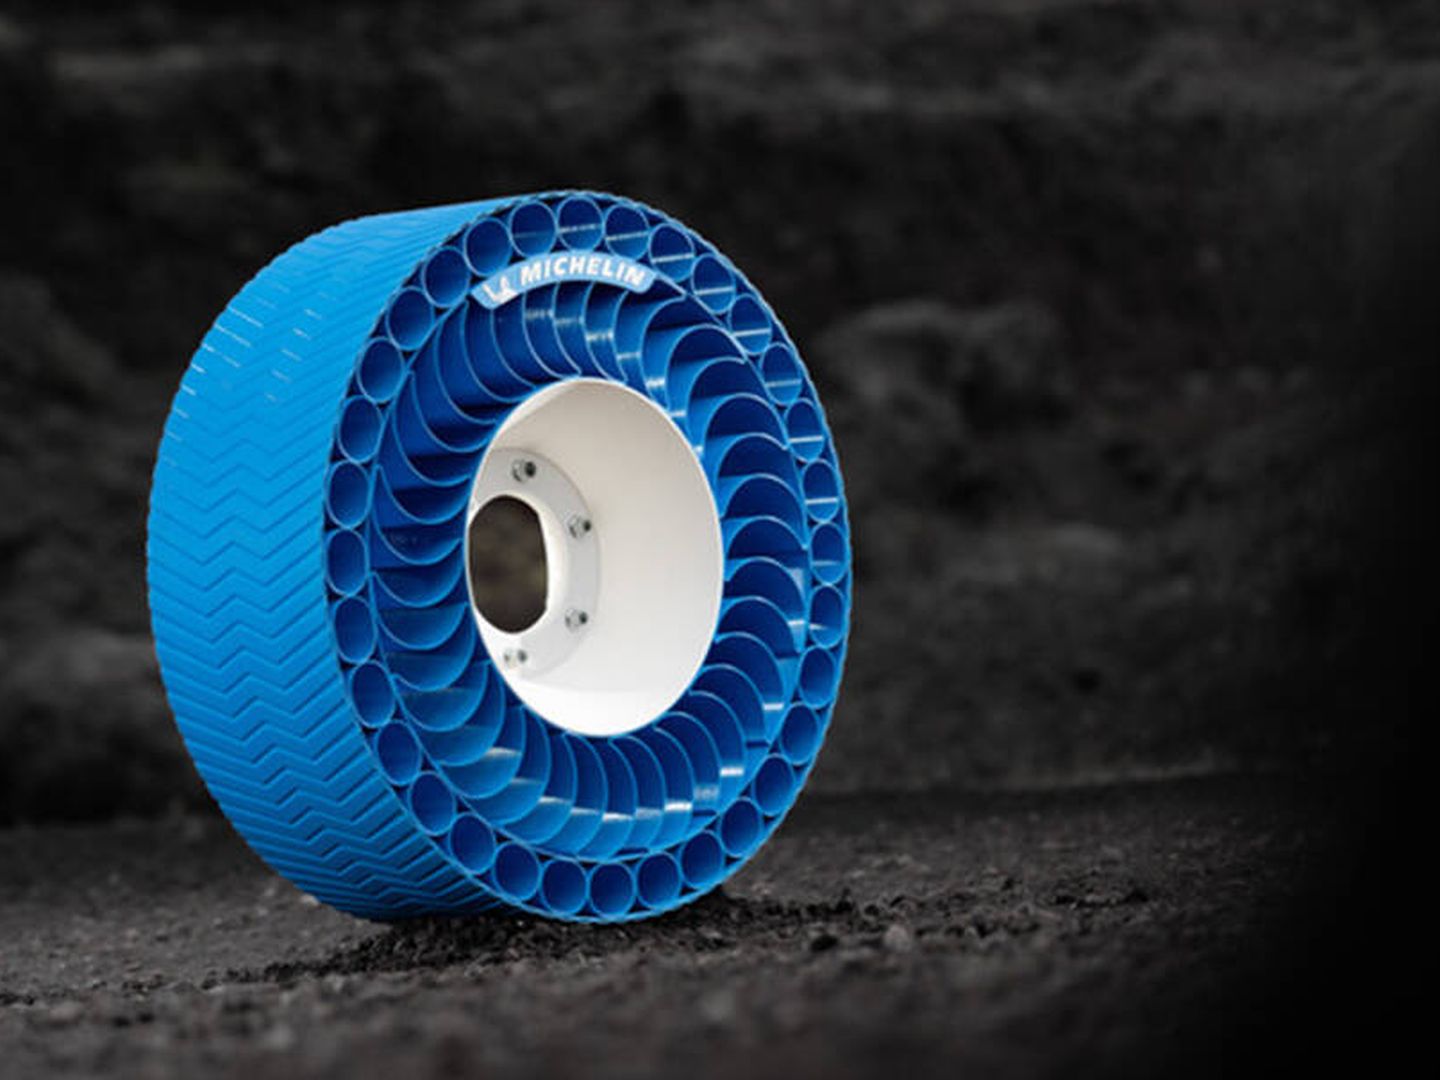 El neumático en el que trabaja Michelin no tiene aire y deberá soportar temperaturas muy bajas y muy altas.